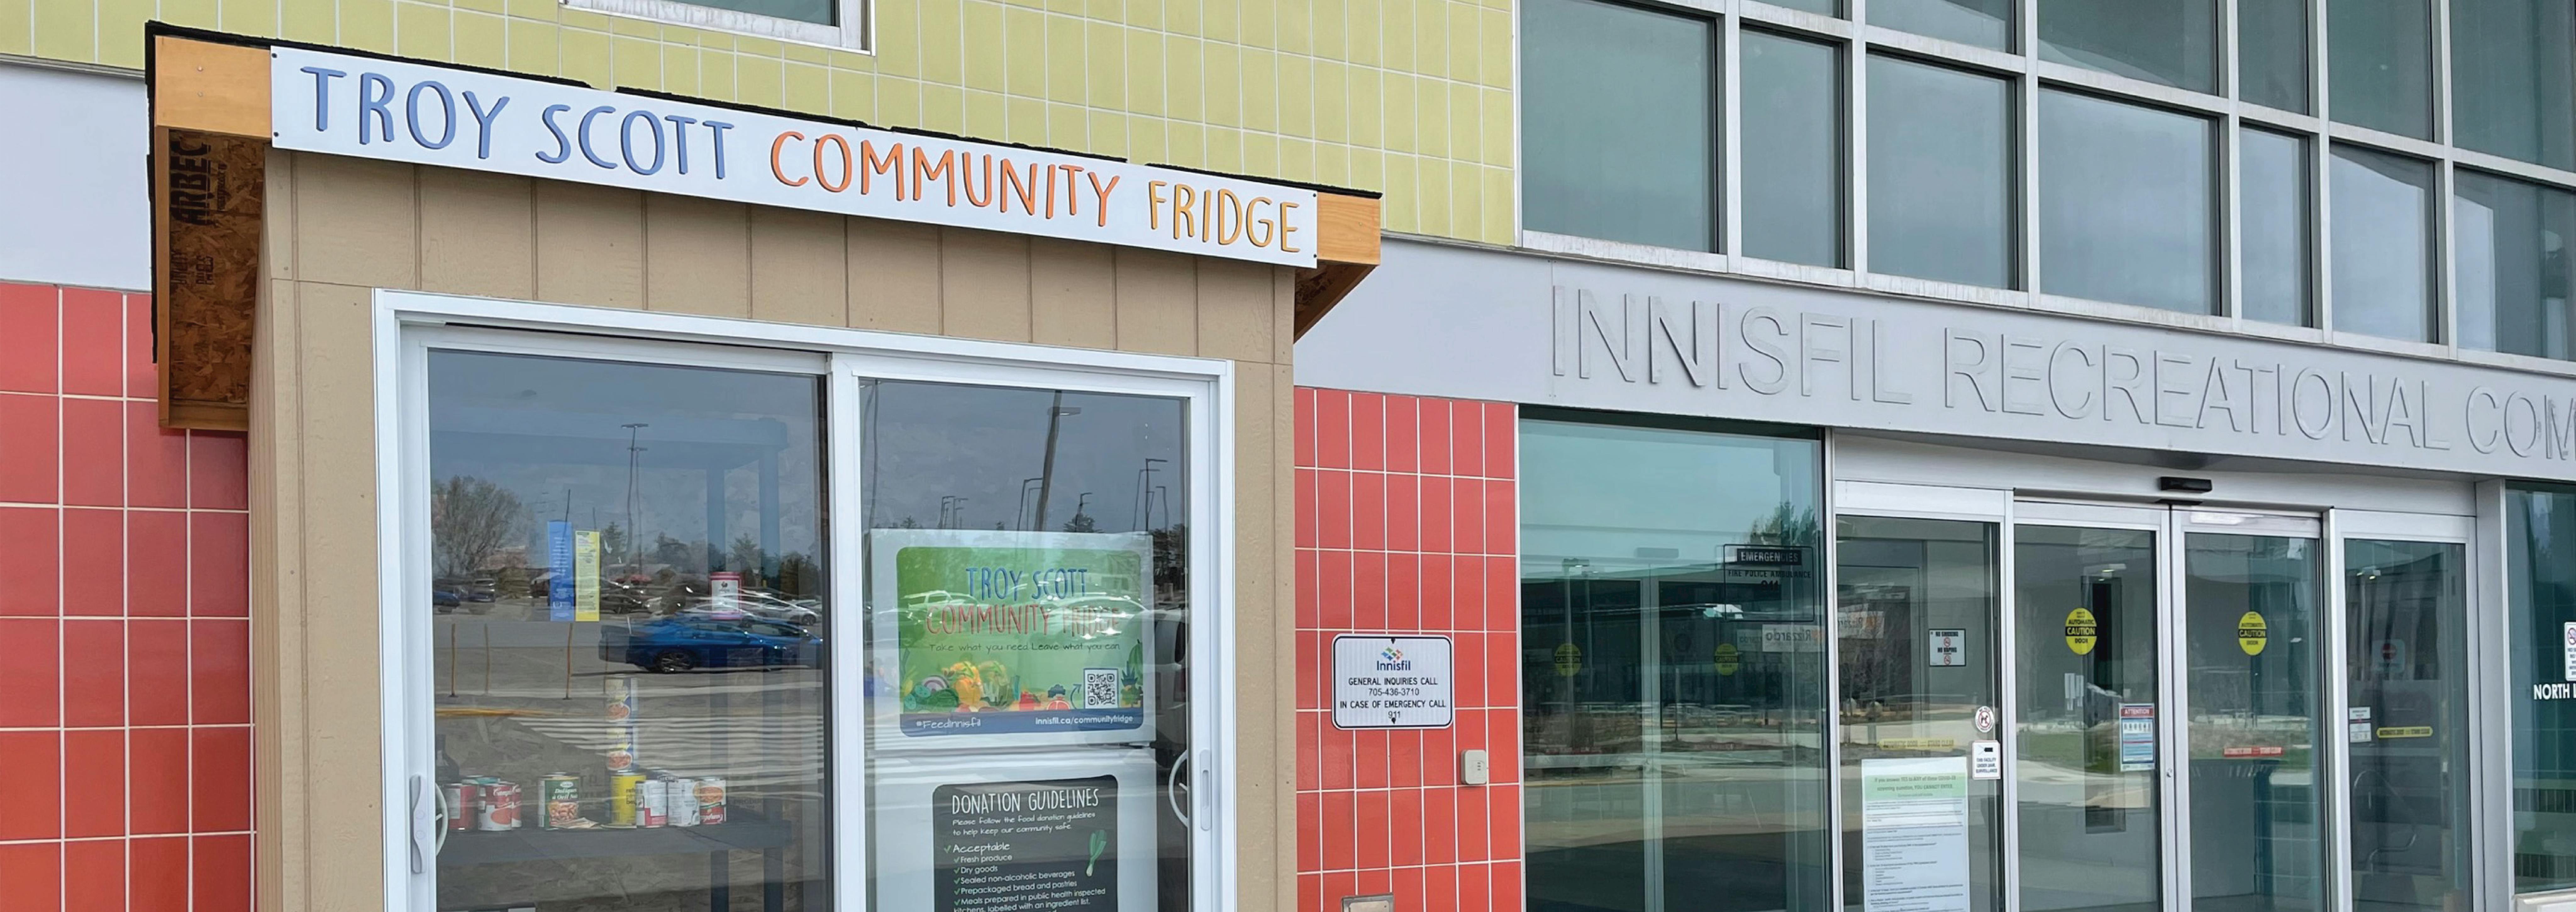 Community fridge outdoors with the name Troy Scott Community Fridge